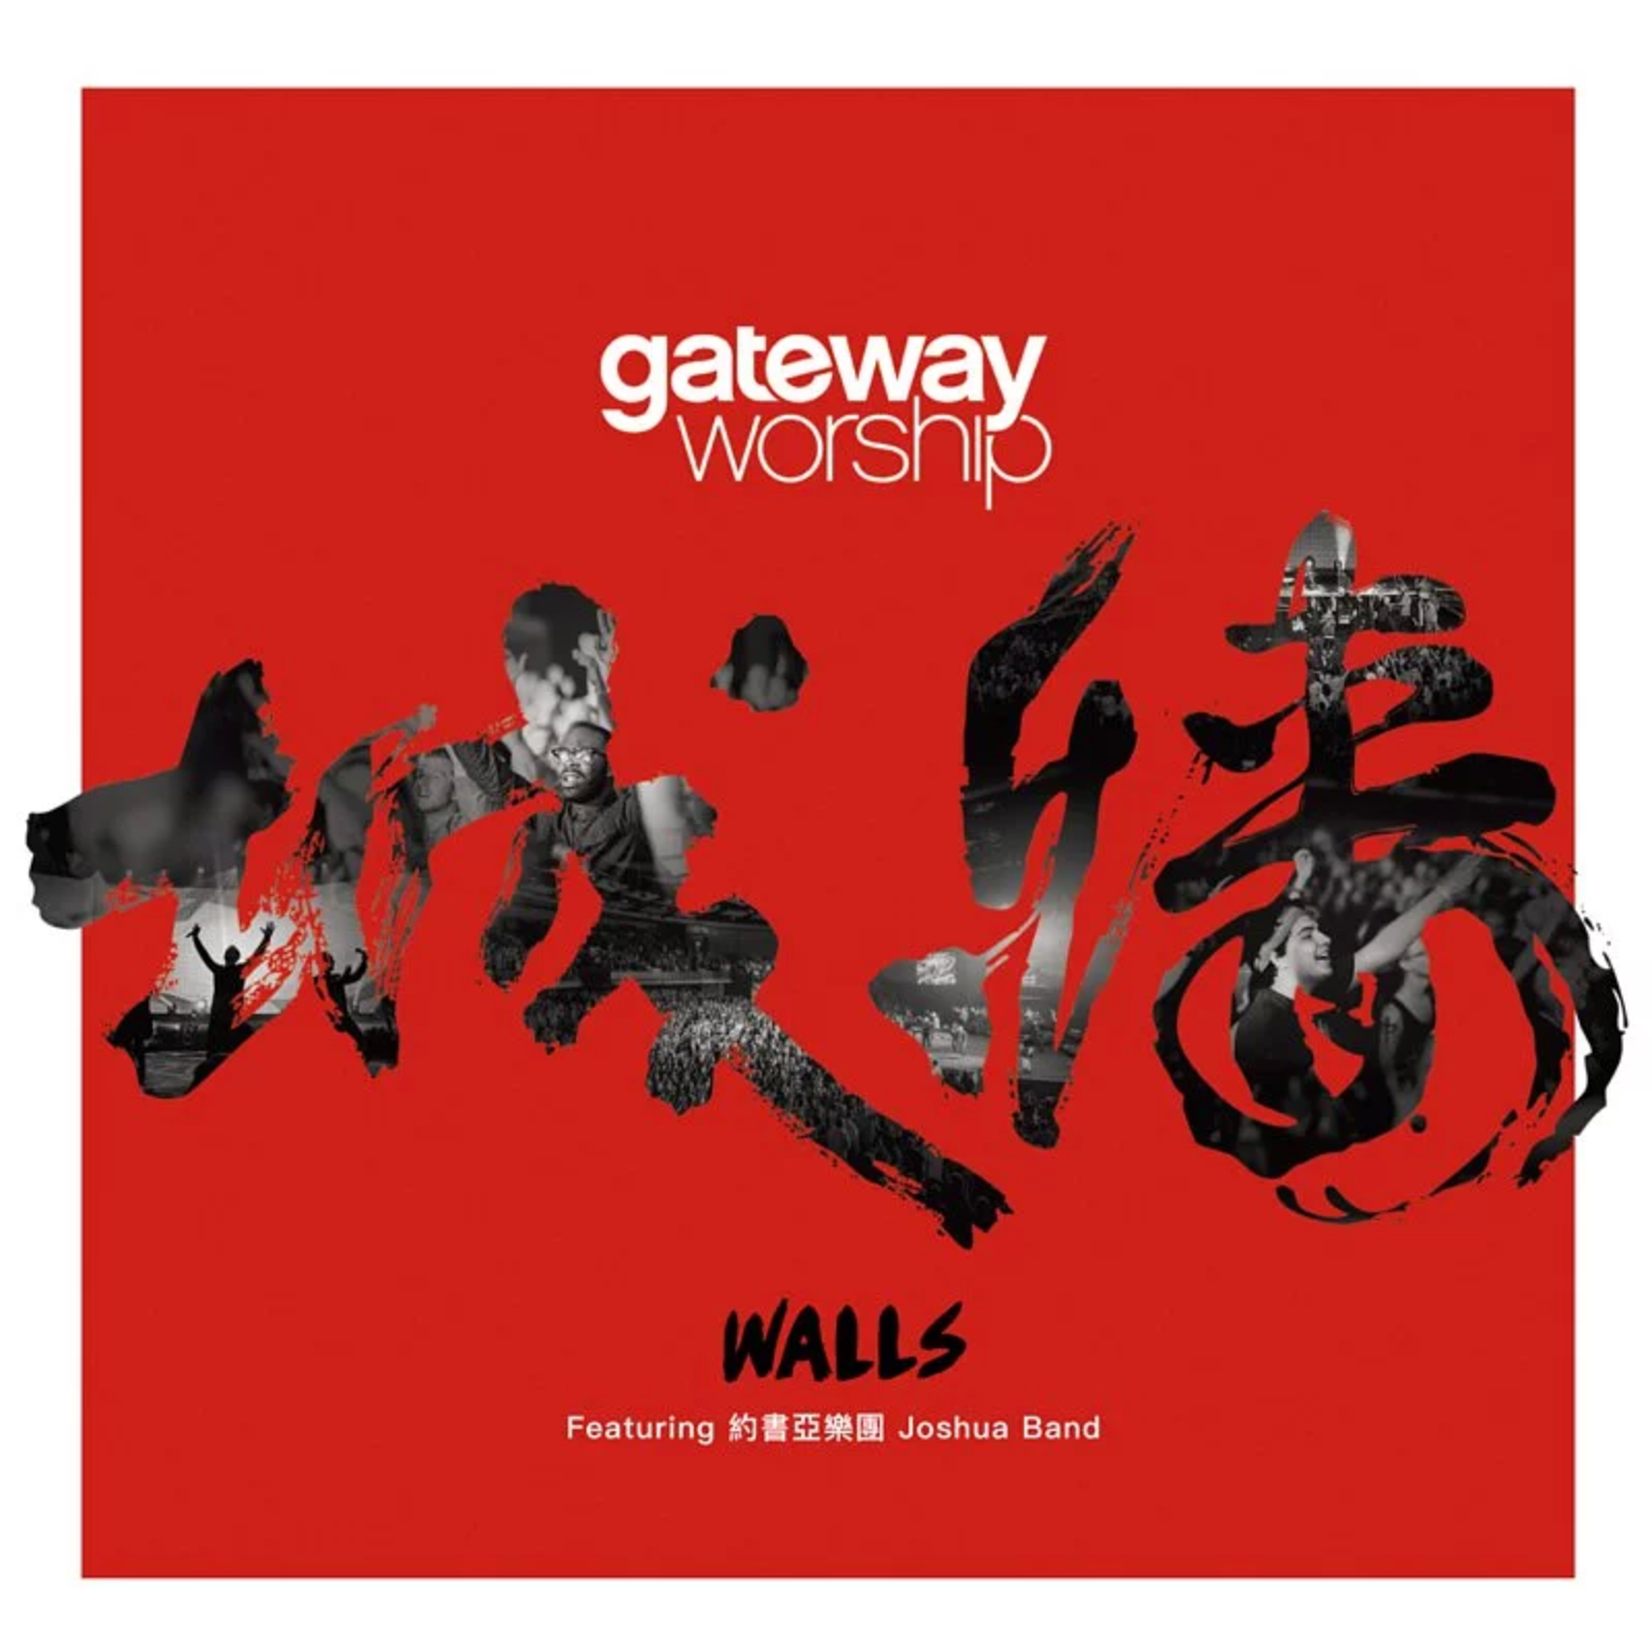 異象工場 Vision Gateway第四張全球通行敬拜讚美專輯中文版：城牆（CD+DVD）